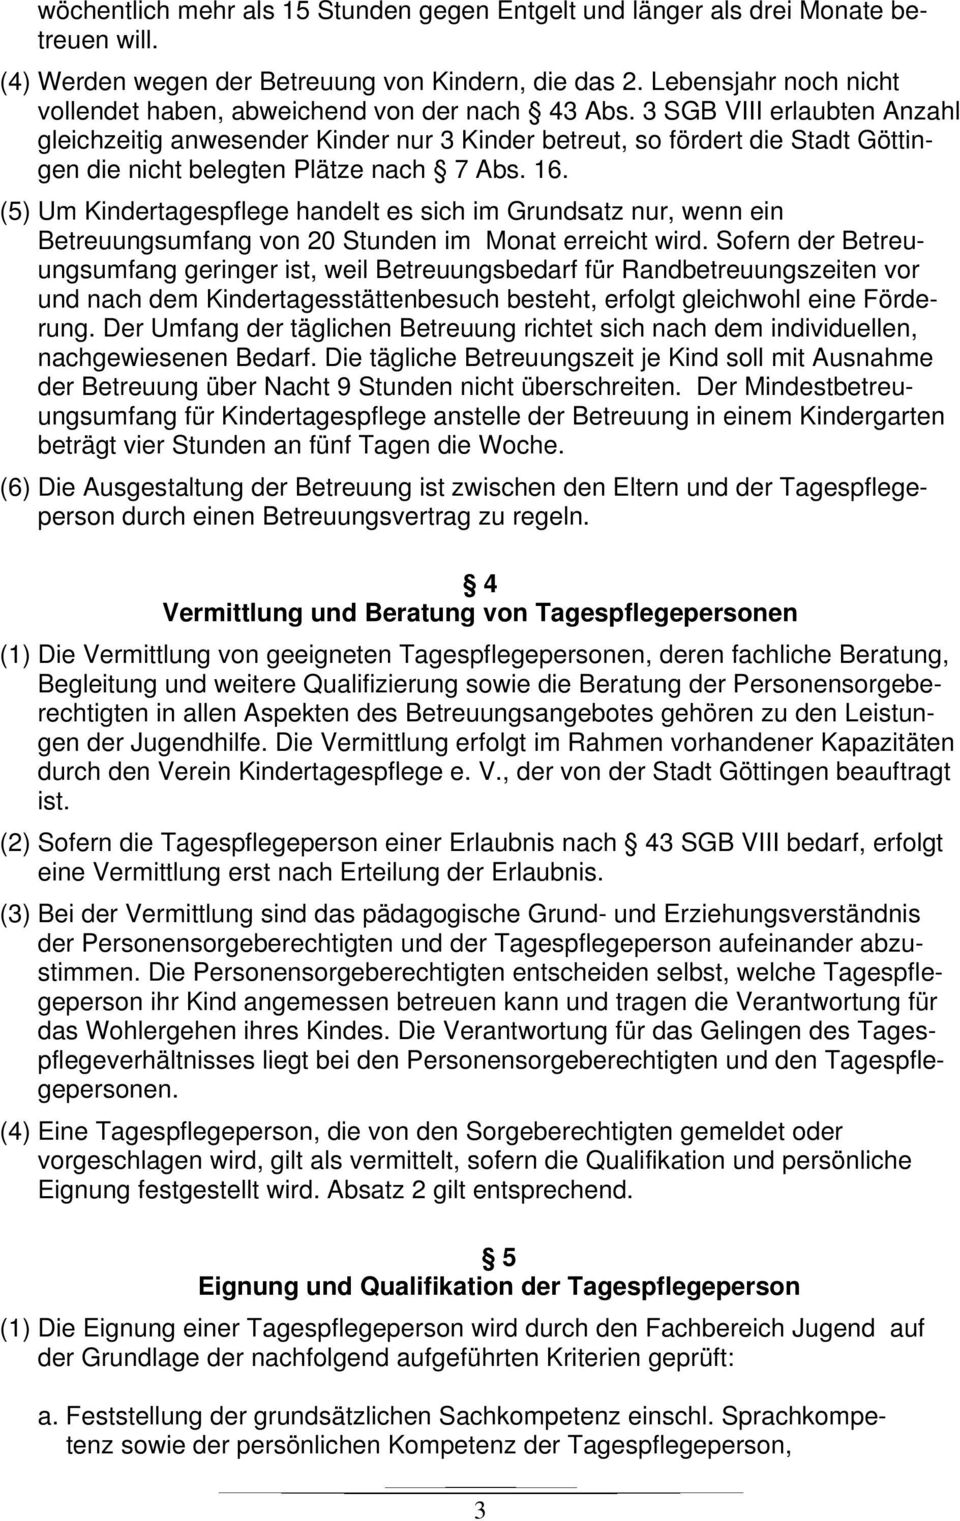 3 SGB VIII erlaubten Anzahl gleichzeitig anwesender Kinder nur 3 Kinder betreut, so fördert die Stadt Göttingen die nicht belegten Plätze nach 7 Abs. 16.